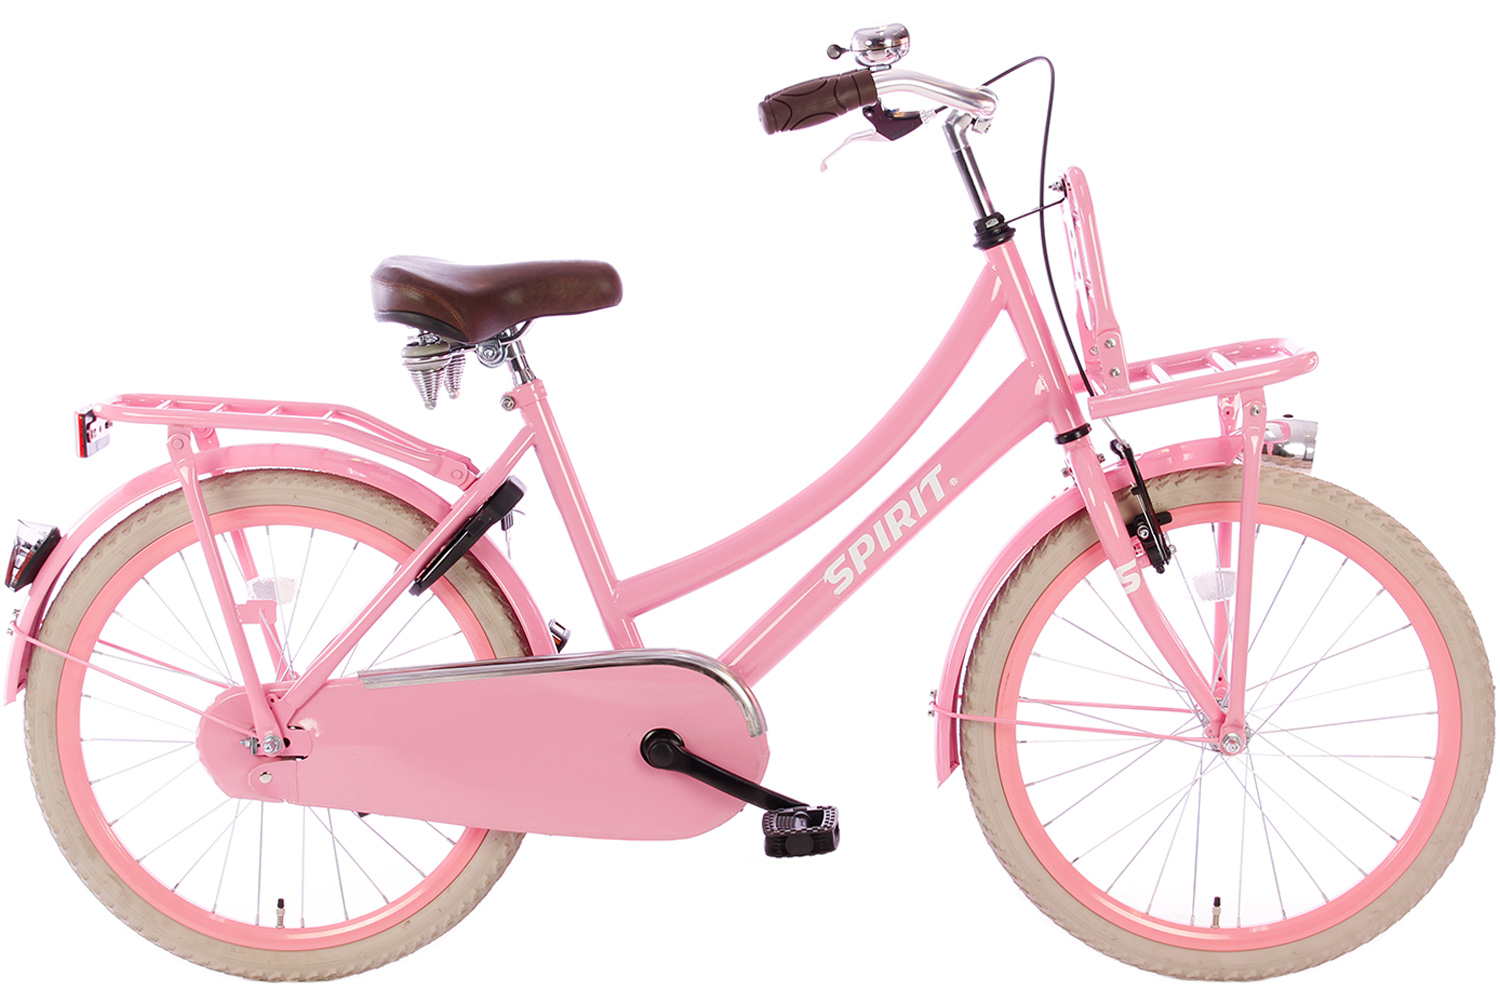 schot zwavel maak een foto Spirit Cargo Roze Meisjesfiets 22 inch - Meisjesfiets | City-Bikes.nl